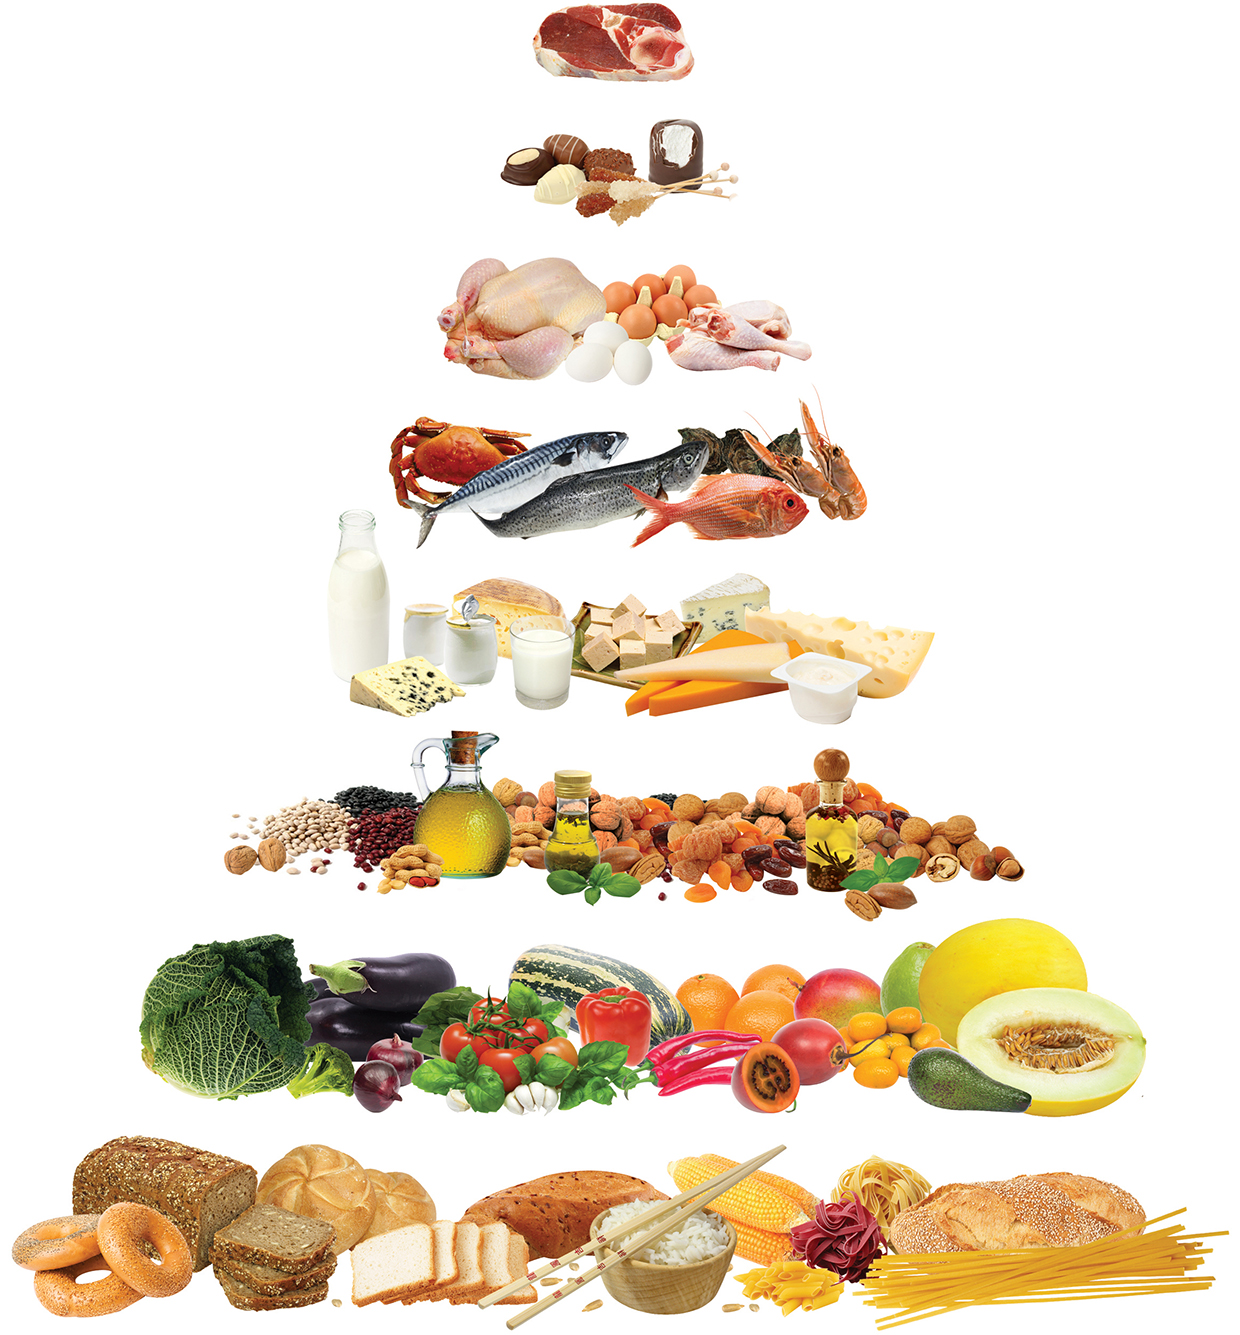 8 Beneficios De La Dieta Mediterránea Un Buen Ejemplo De Alimentación Sana Y Equilibrada Mis 2966